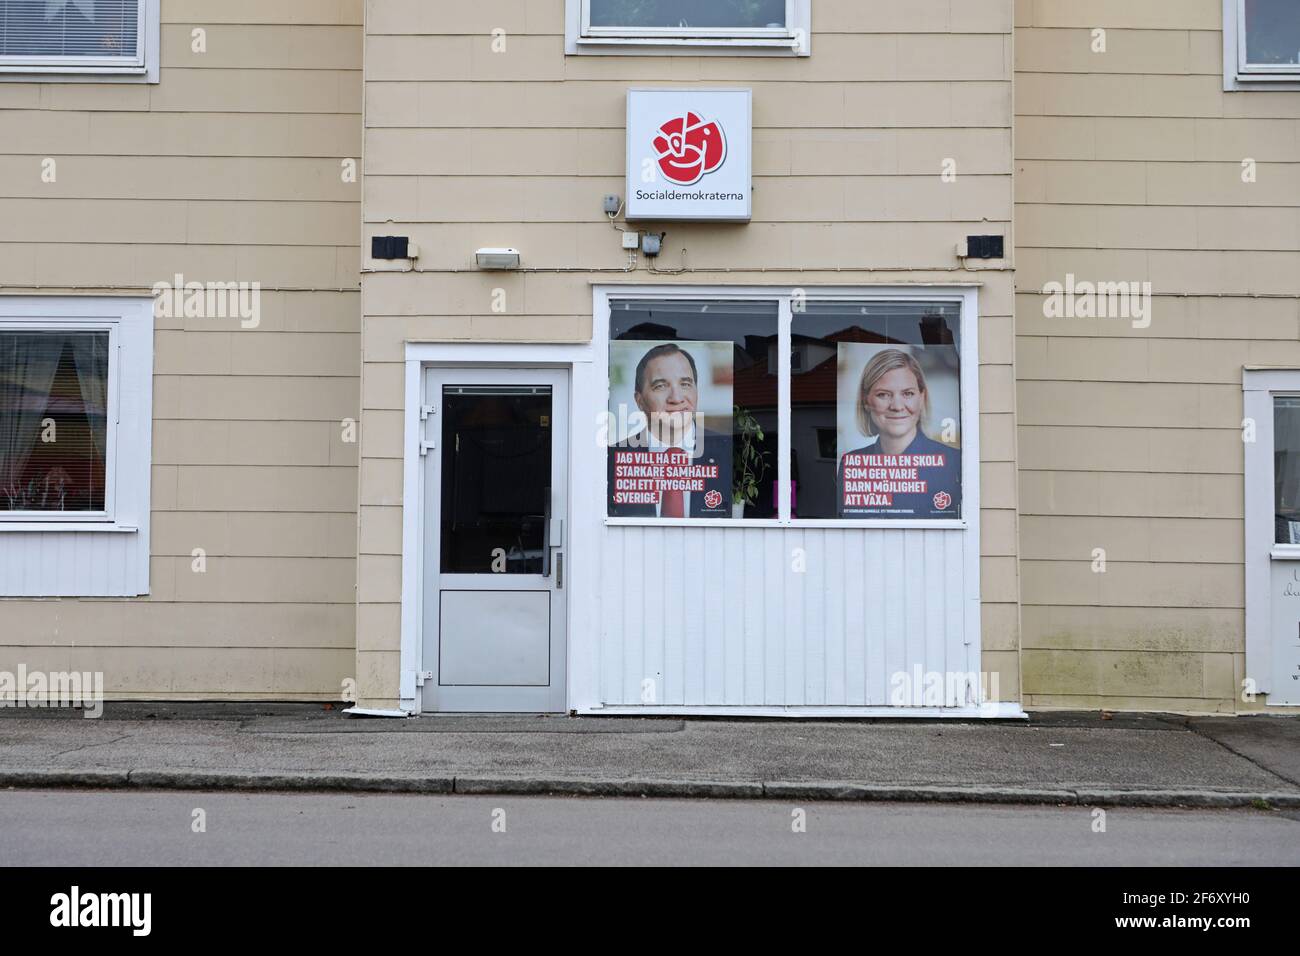 Un ufficio locale per i socialdemocratici. Foto Stock